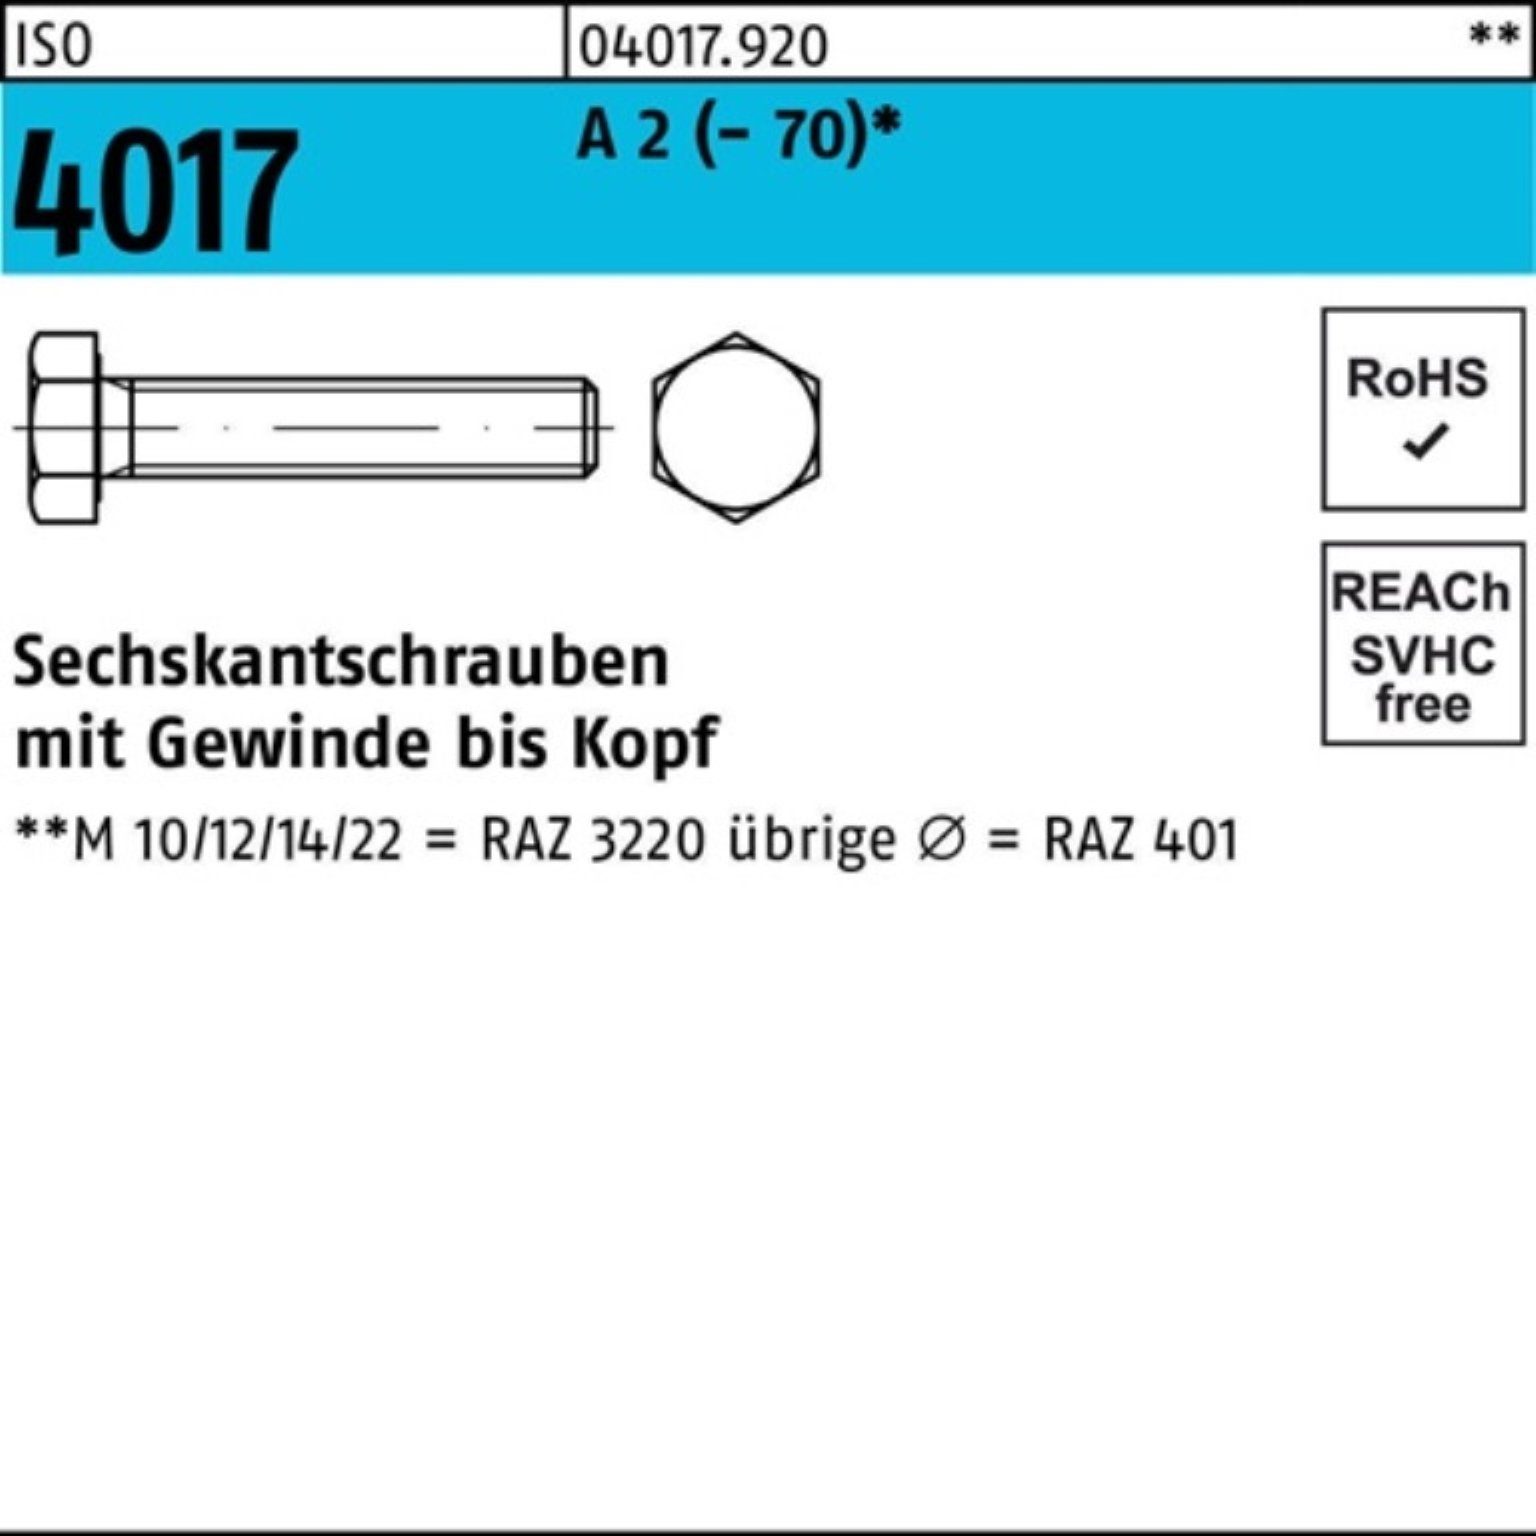 Bufab Sechskantschraube 100er Pack Sechskantschraube ISO 4017 VG M6x 75 A 2 (70) 100 Stück